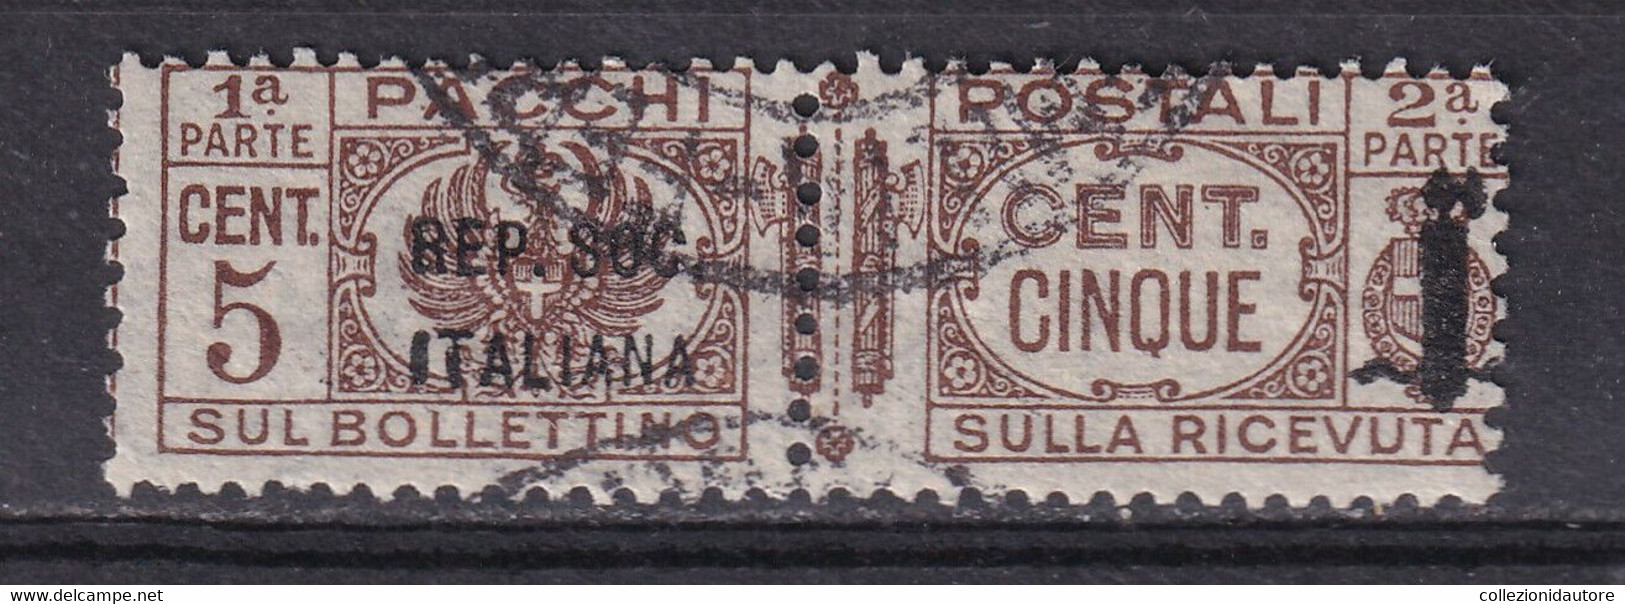 PACCHI POSTALI - CENT. 5 USATO - SOPRASTAMPA REPUBBLICA SOCIALE ITALIANA - Postal Parcels